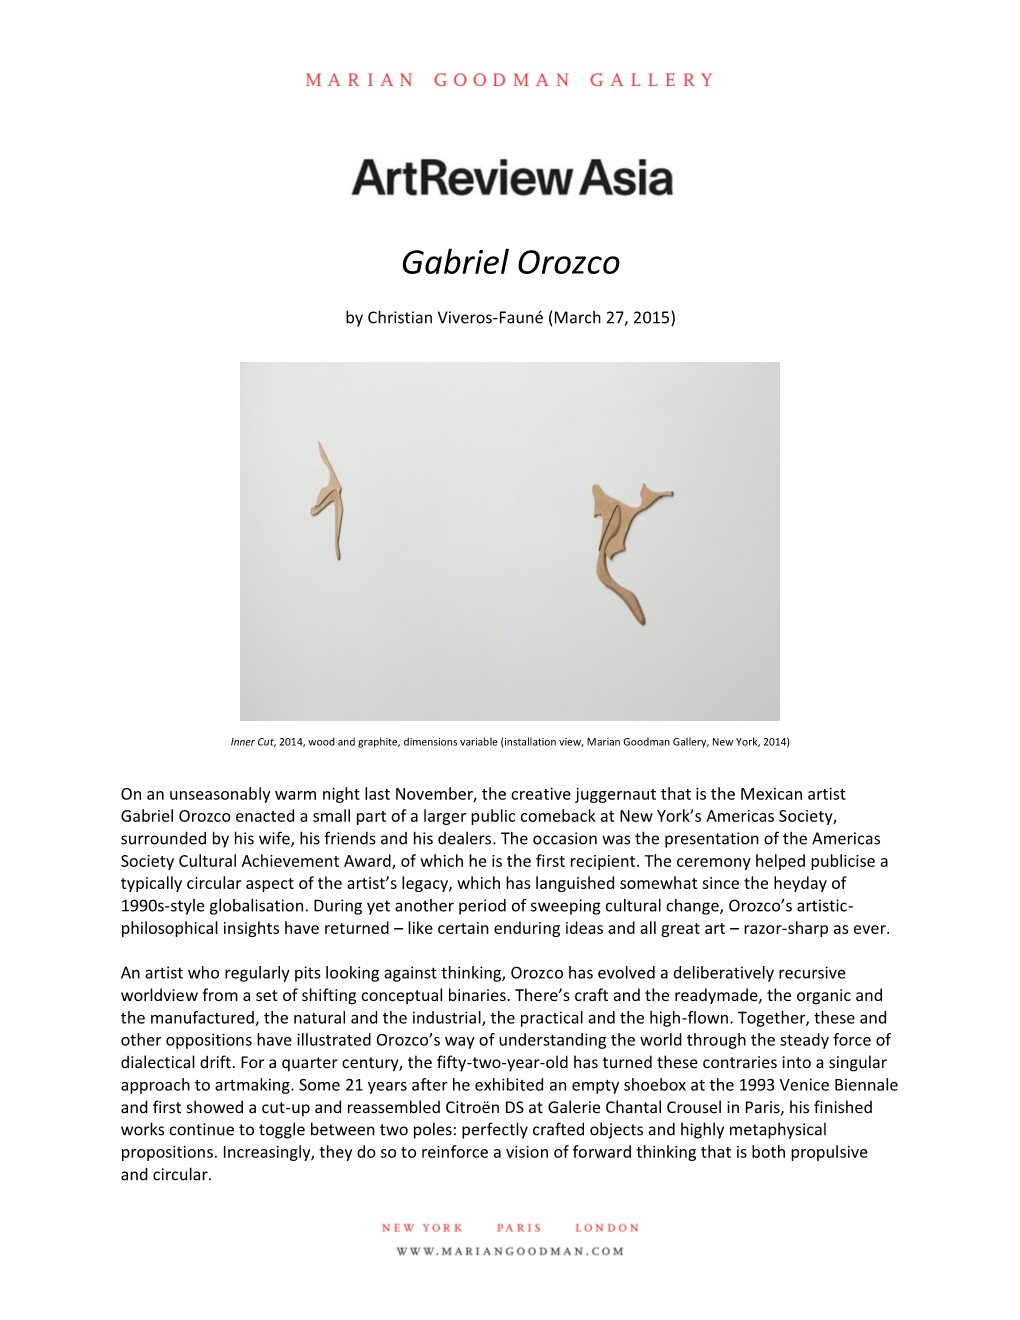 Press Gabriel Orozco Artreview Asia, March 27, 2015